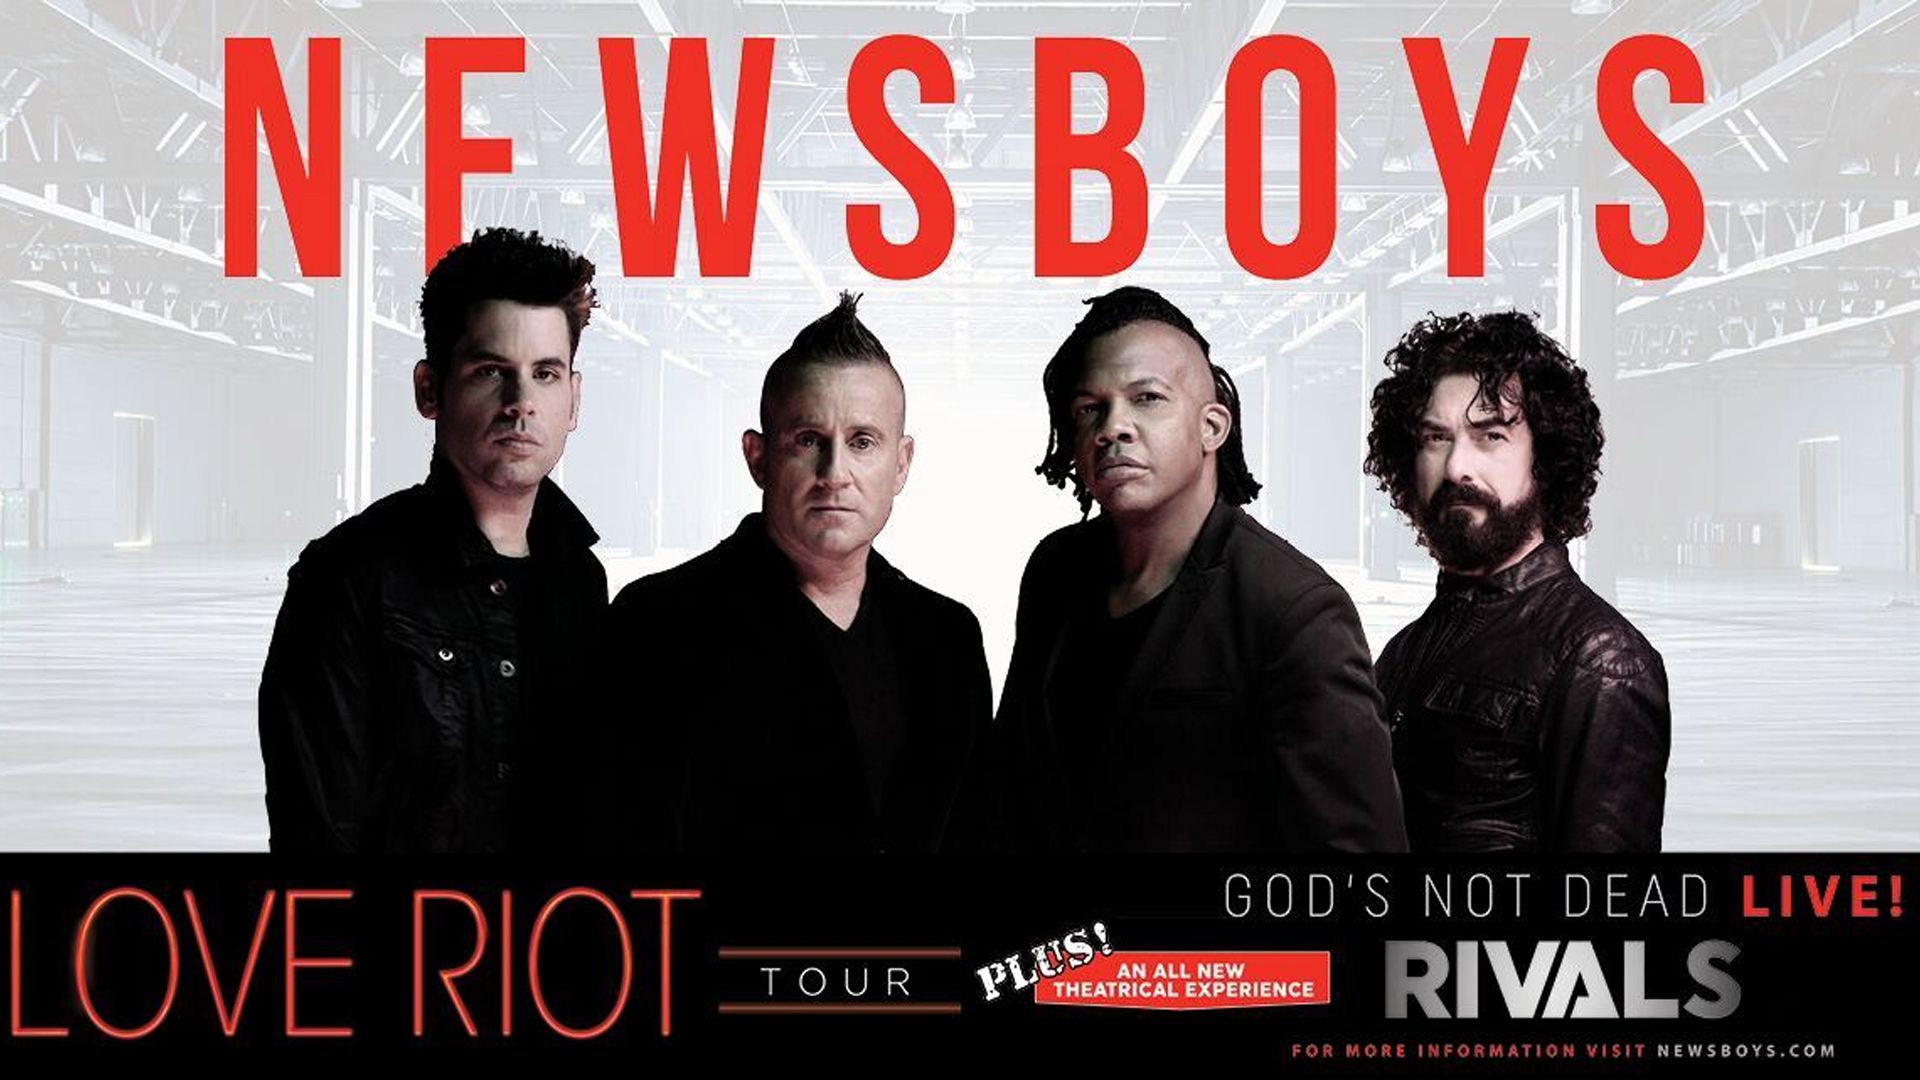 Newsboys Riot Tour Civic Auditorium and Coliseum